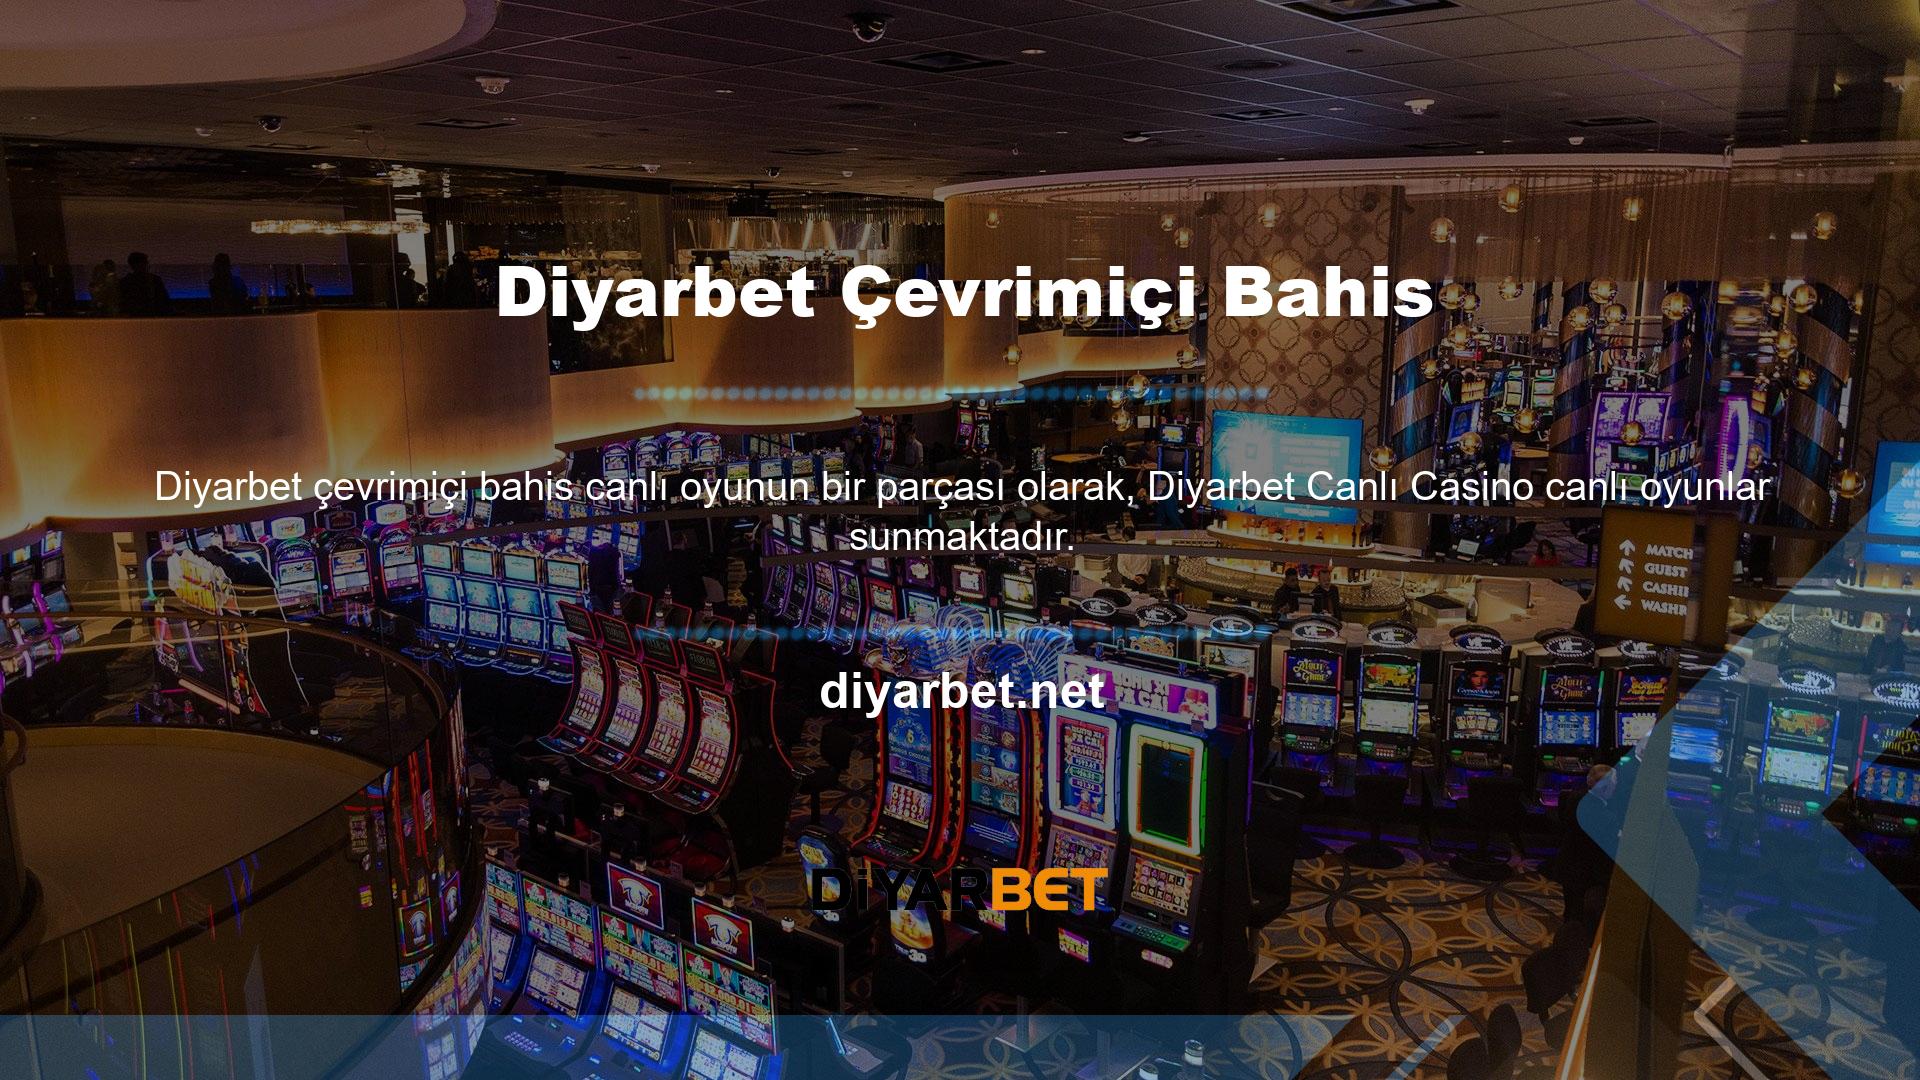 Diyarbet web sitesi farklı türlere göre canlı casino oyun seçenekleri oluşturmaktadır